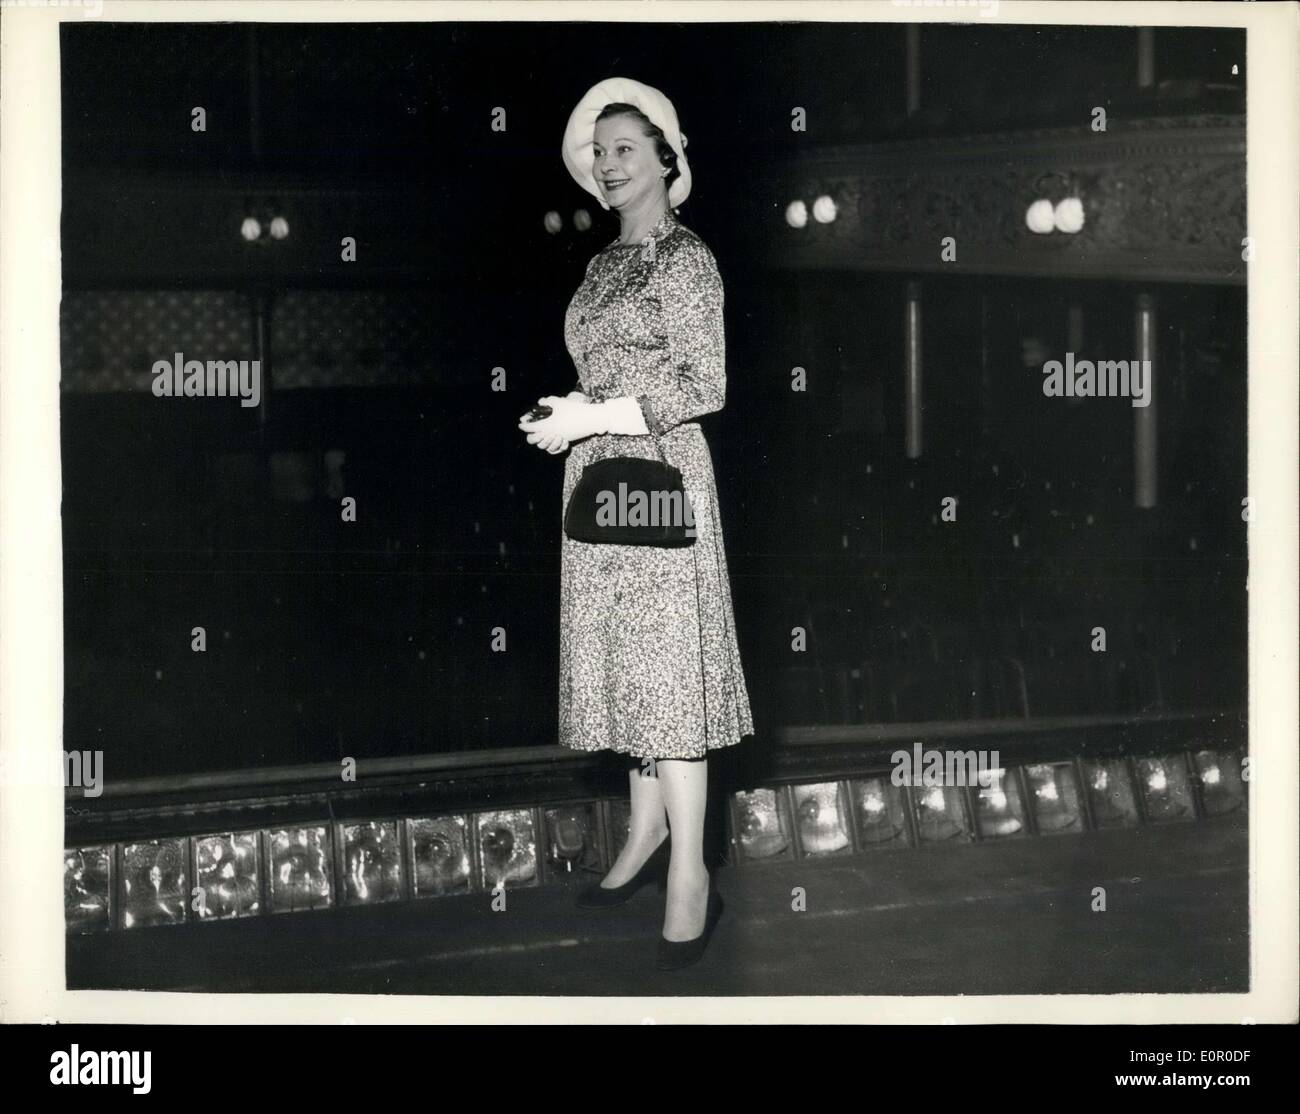 Juillet 18, 1957 - Vivien Leigh James's Visites de soutien scolaire elle proteste contre la démolition : Vivien Leigh, actrice, épouse de Sir Laurence Olivier, qui, la semaine dernière, a pris la parole à la Chambre des Lords et a protesté contre la démolition de la 122-year-old St. James's Theatre, s'il n'y cet après-midi. Todays elle devait rencontrer M. Felix Fenston, le financier, qui a acheté le théâtre, et des plans pour tirer ses propres à permettre la construction de bureaux. Photo montre Vivien Leigh se dresse sur le stade de St James's Theatre au cours de sa visite cet après-midi. Banque D'Images